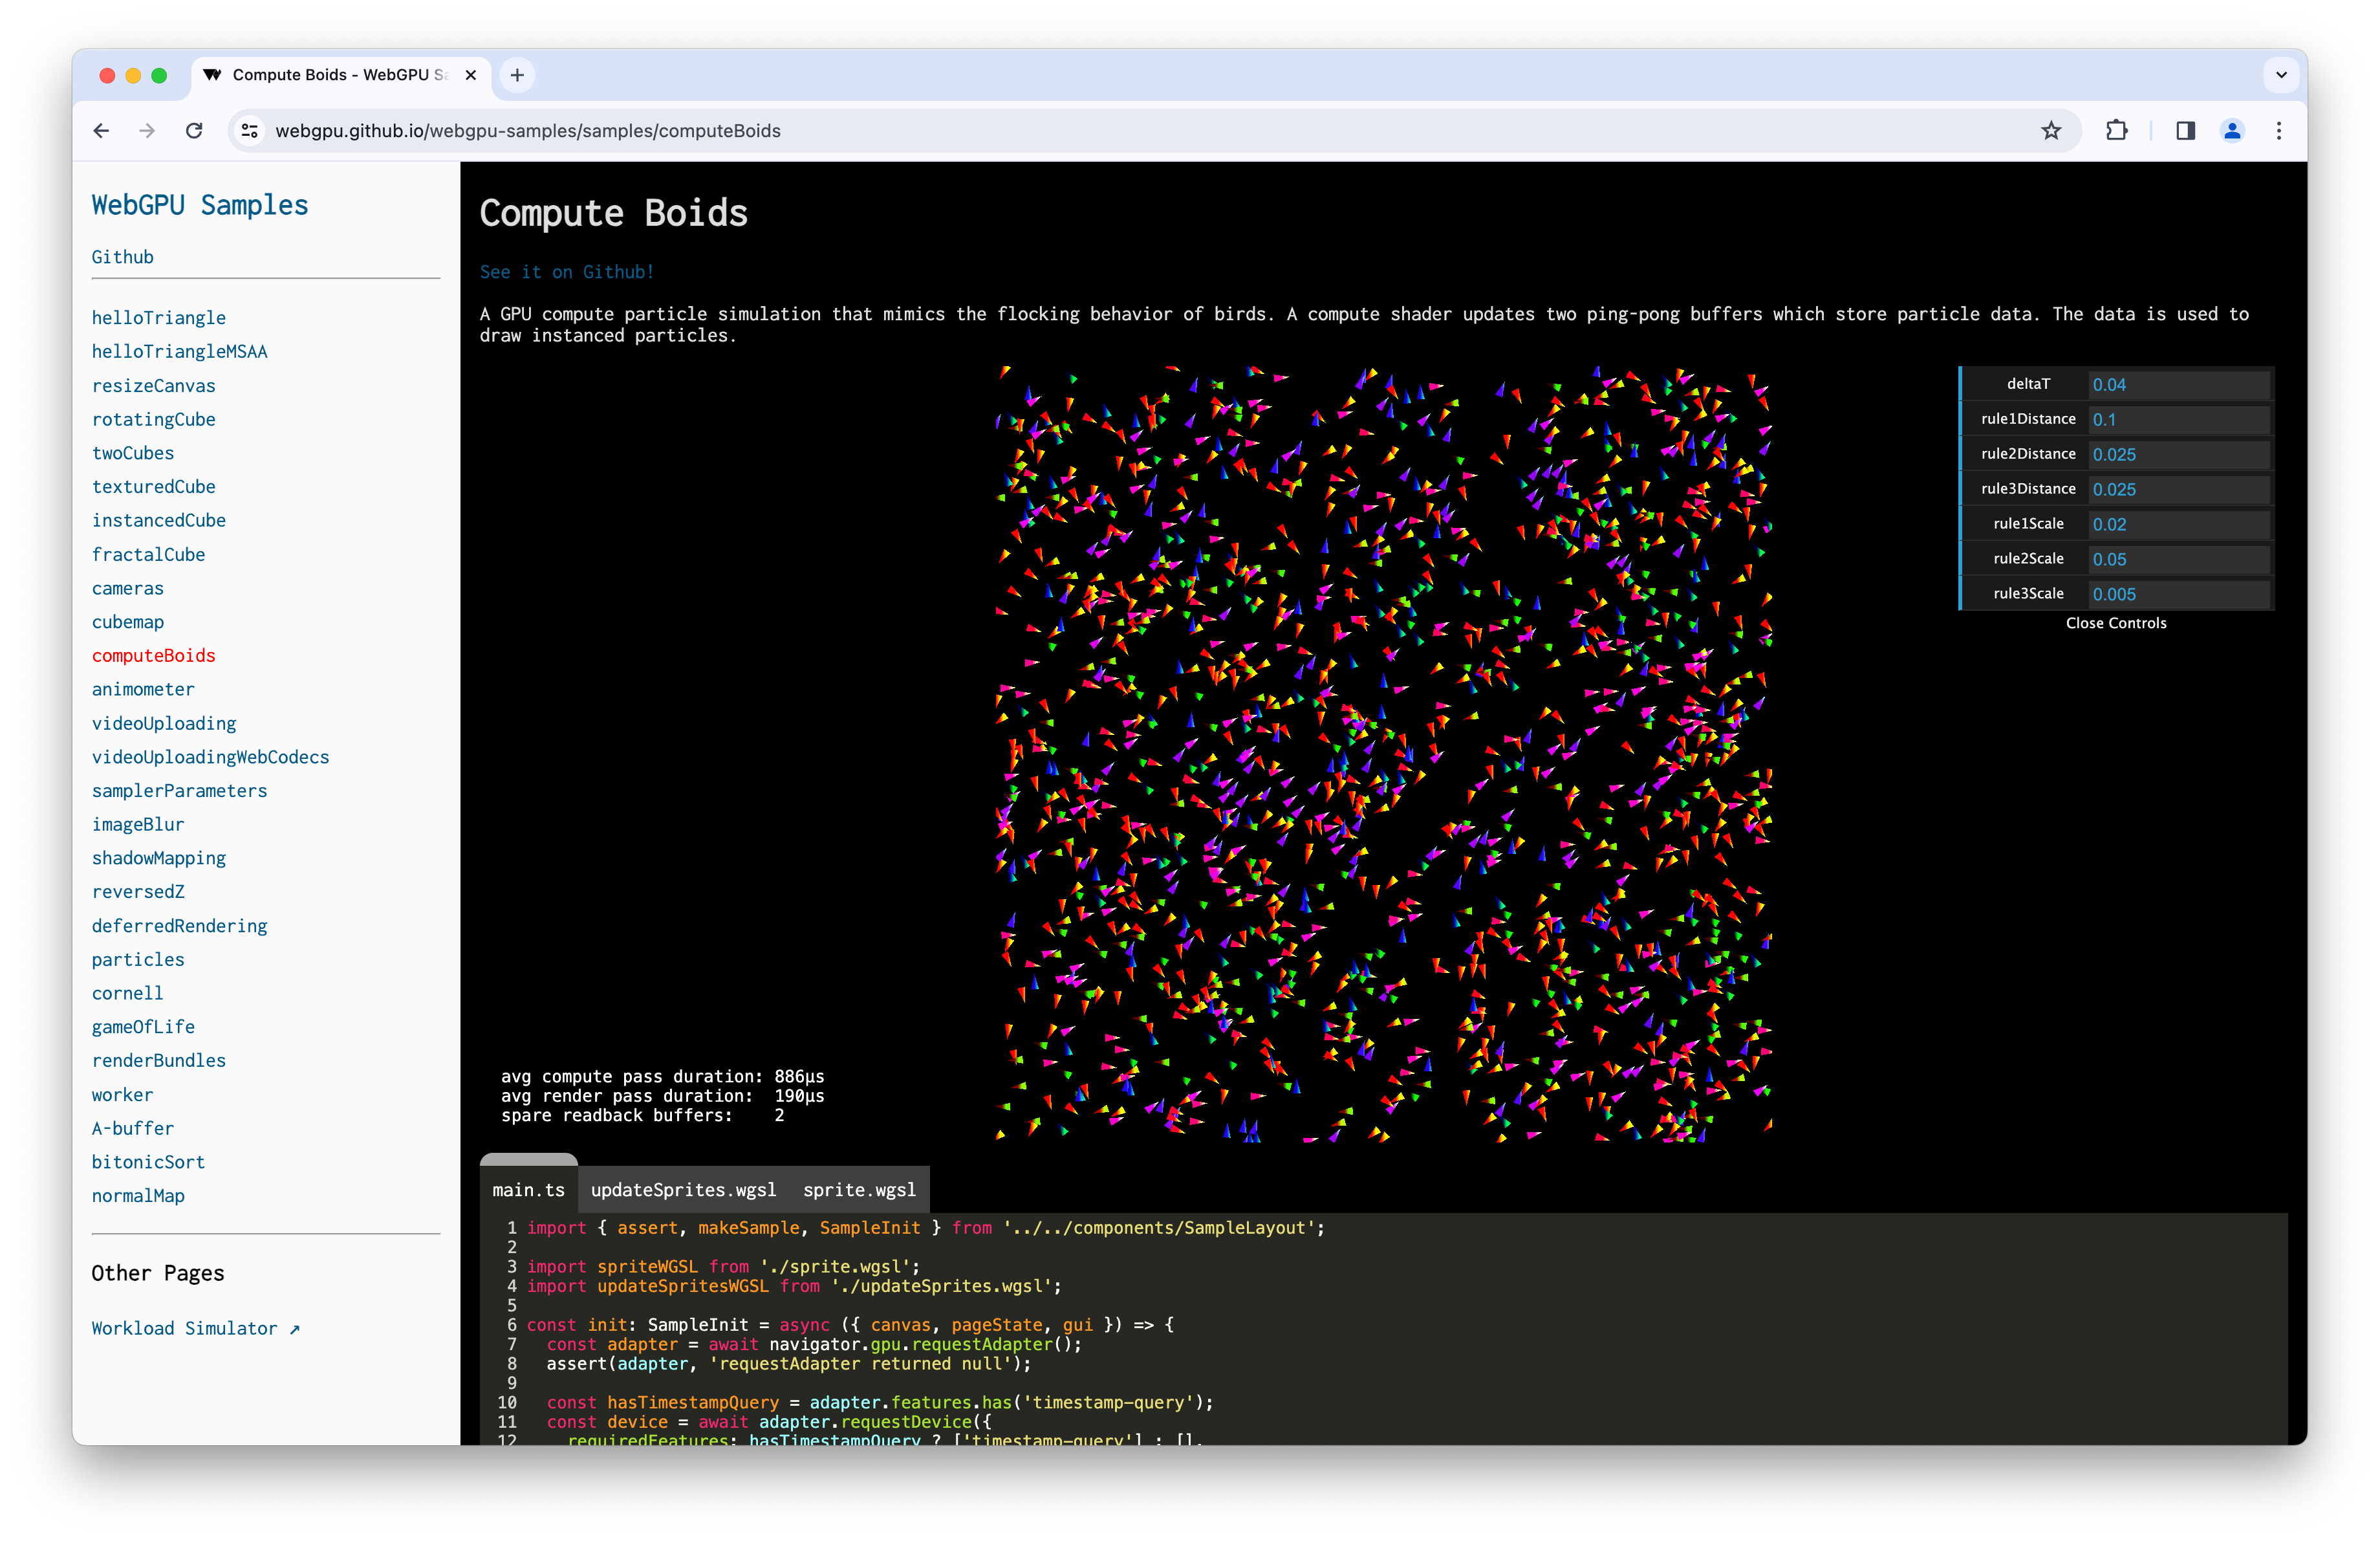 Captura de tela da amostra do Compute Boids com consulta de carimbo de data/hora.